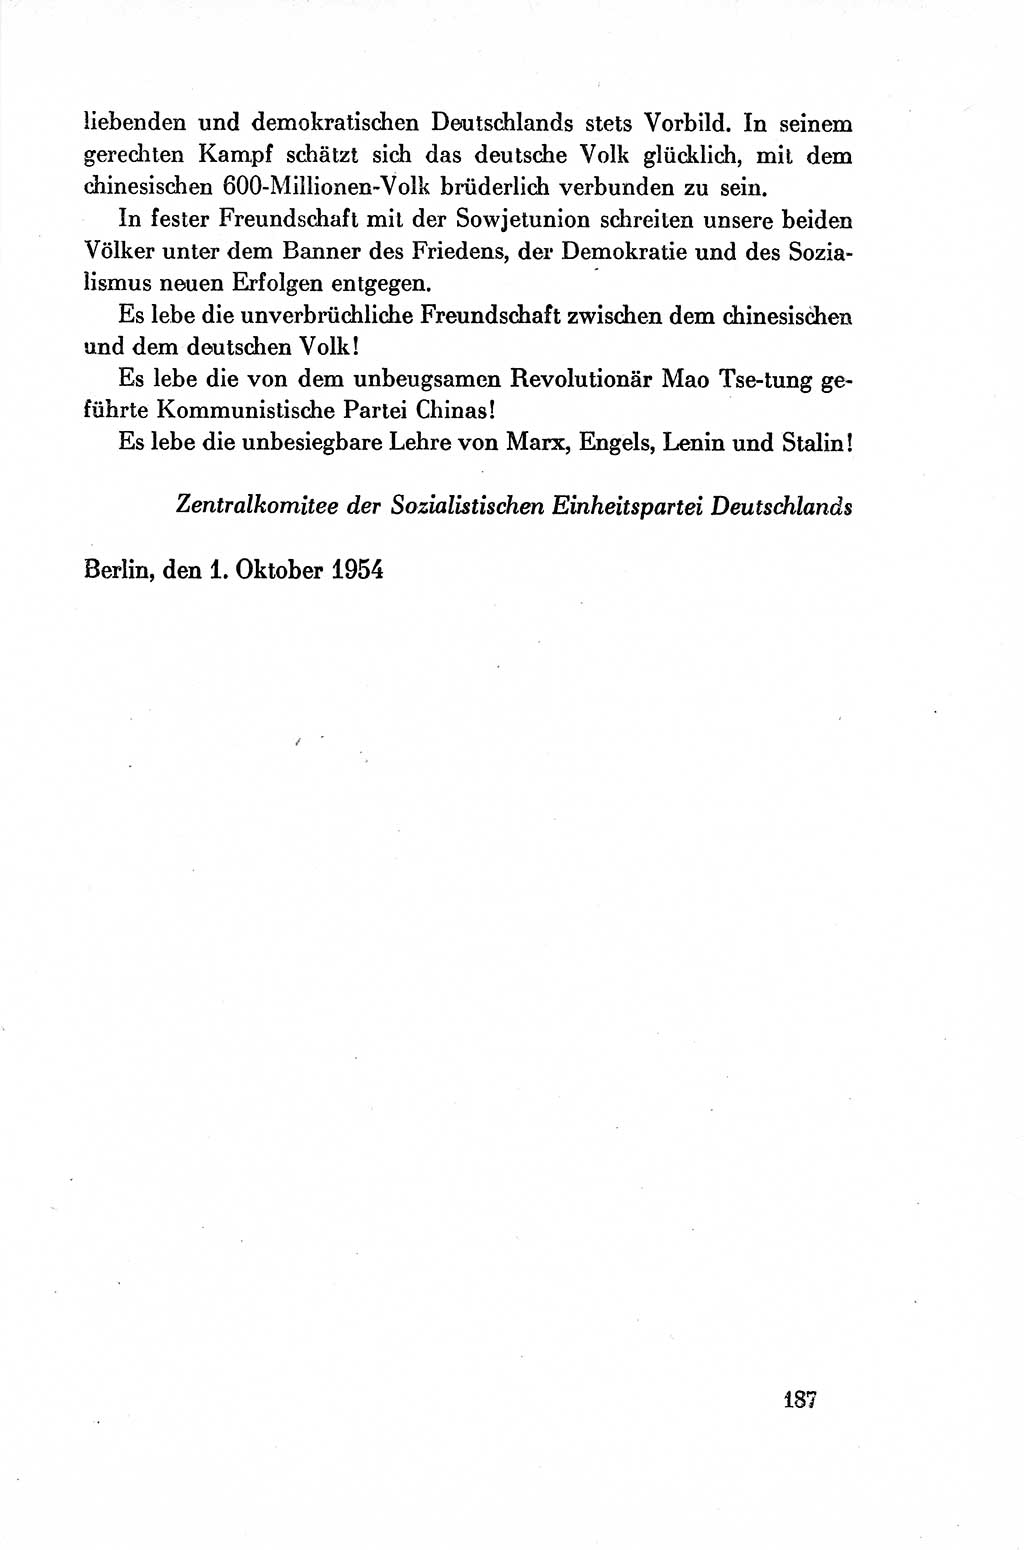 Dokumente der Sozialistischen Einheitspartei Deutschlands (SED) [Deutsche Demokratische Republik (DDR)] 1954-1955, Seite 187 (Dok. SED DDR 1954-1955, S. 187)